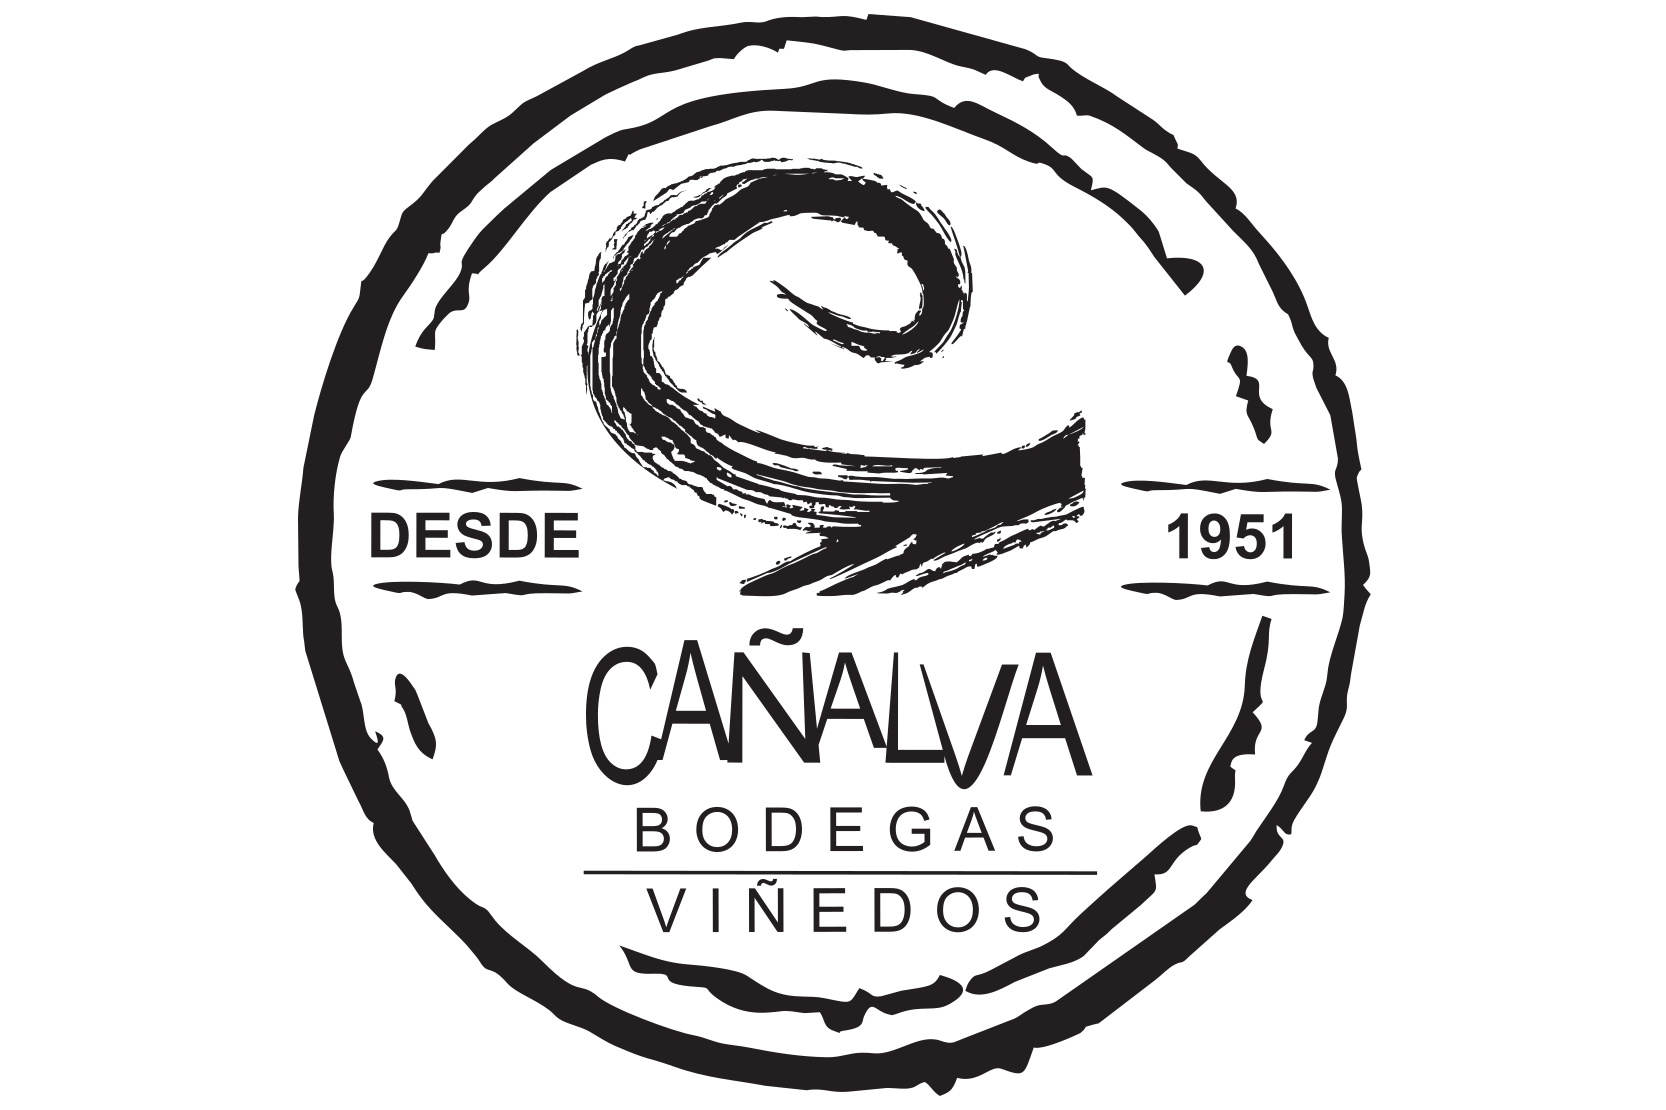 Bodegas Cañalva